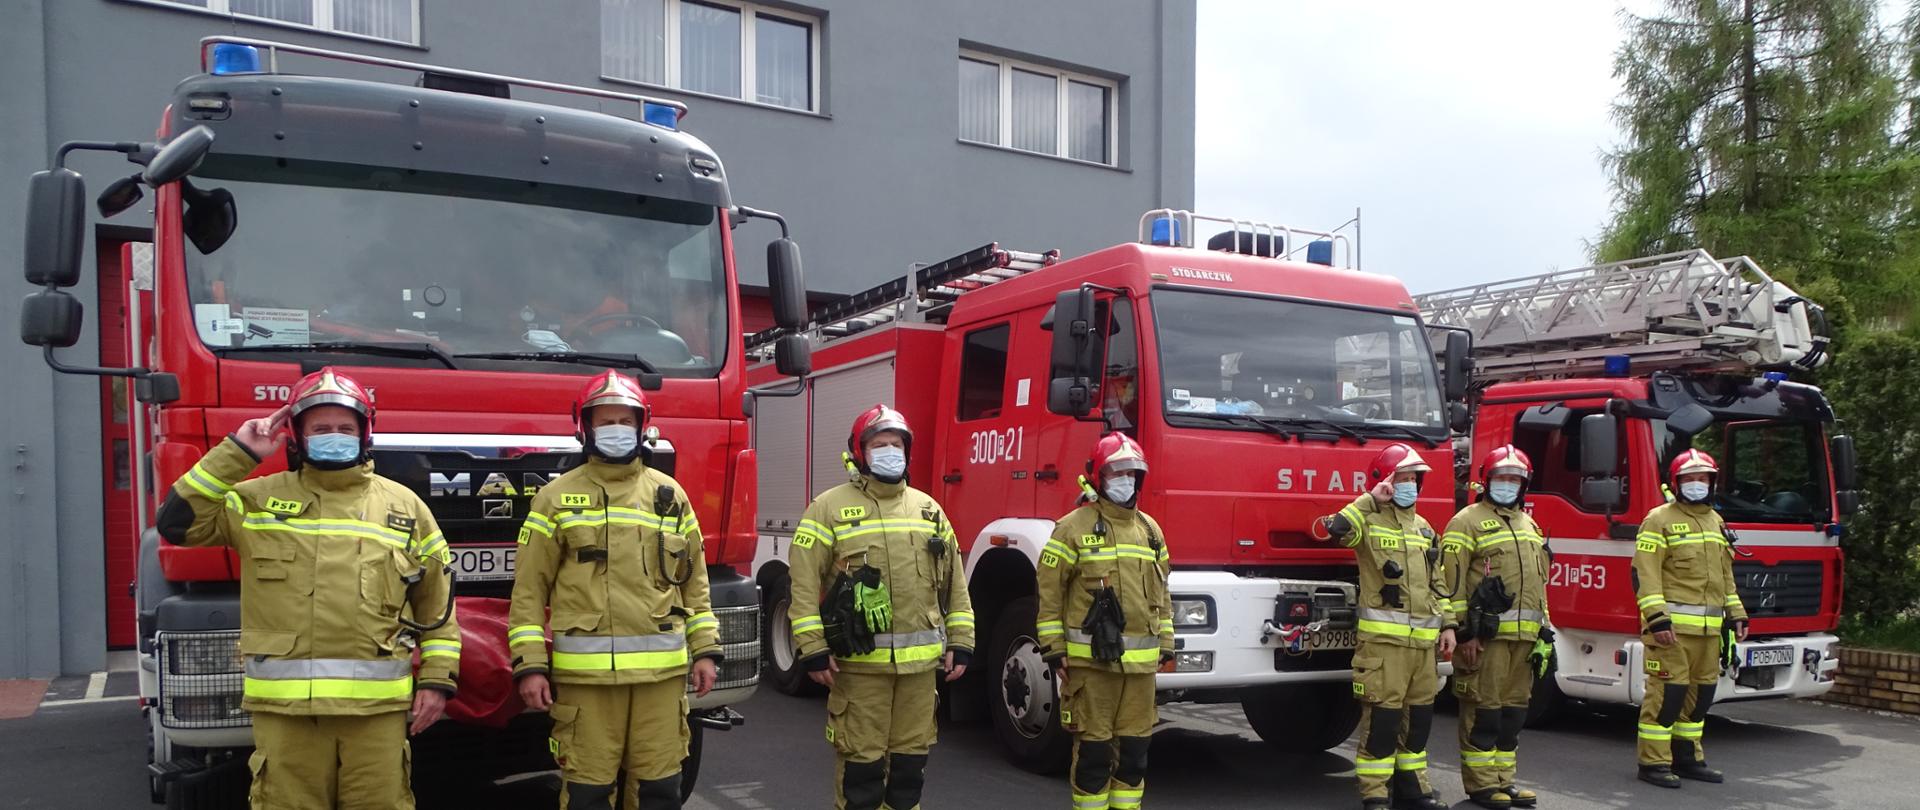 strażacy oddają honor w tle pojazdy ratowniczo - gaśnicze 